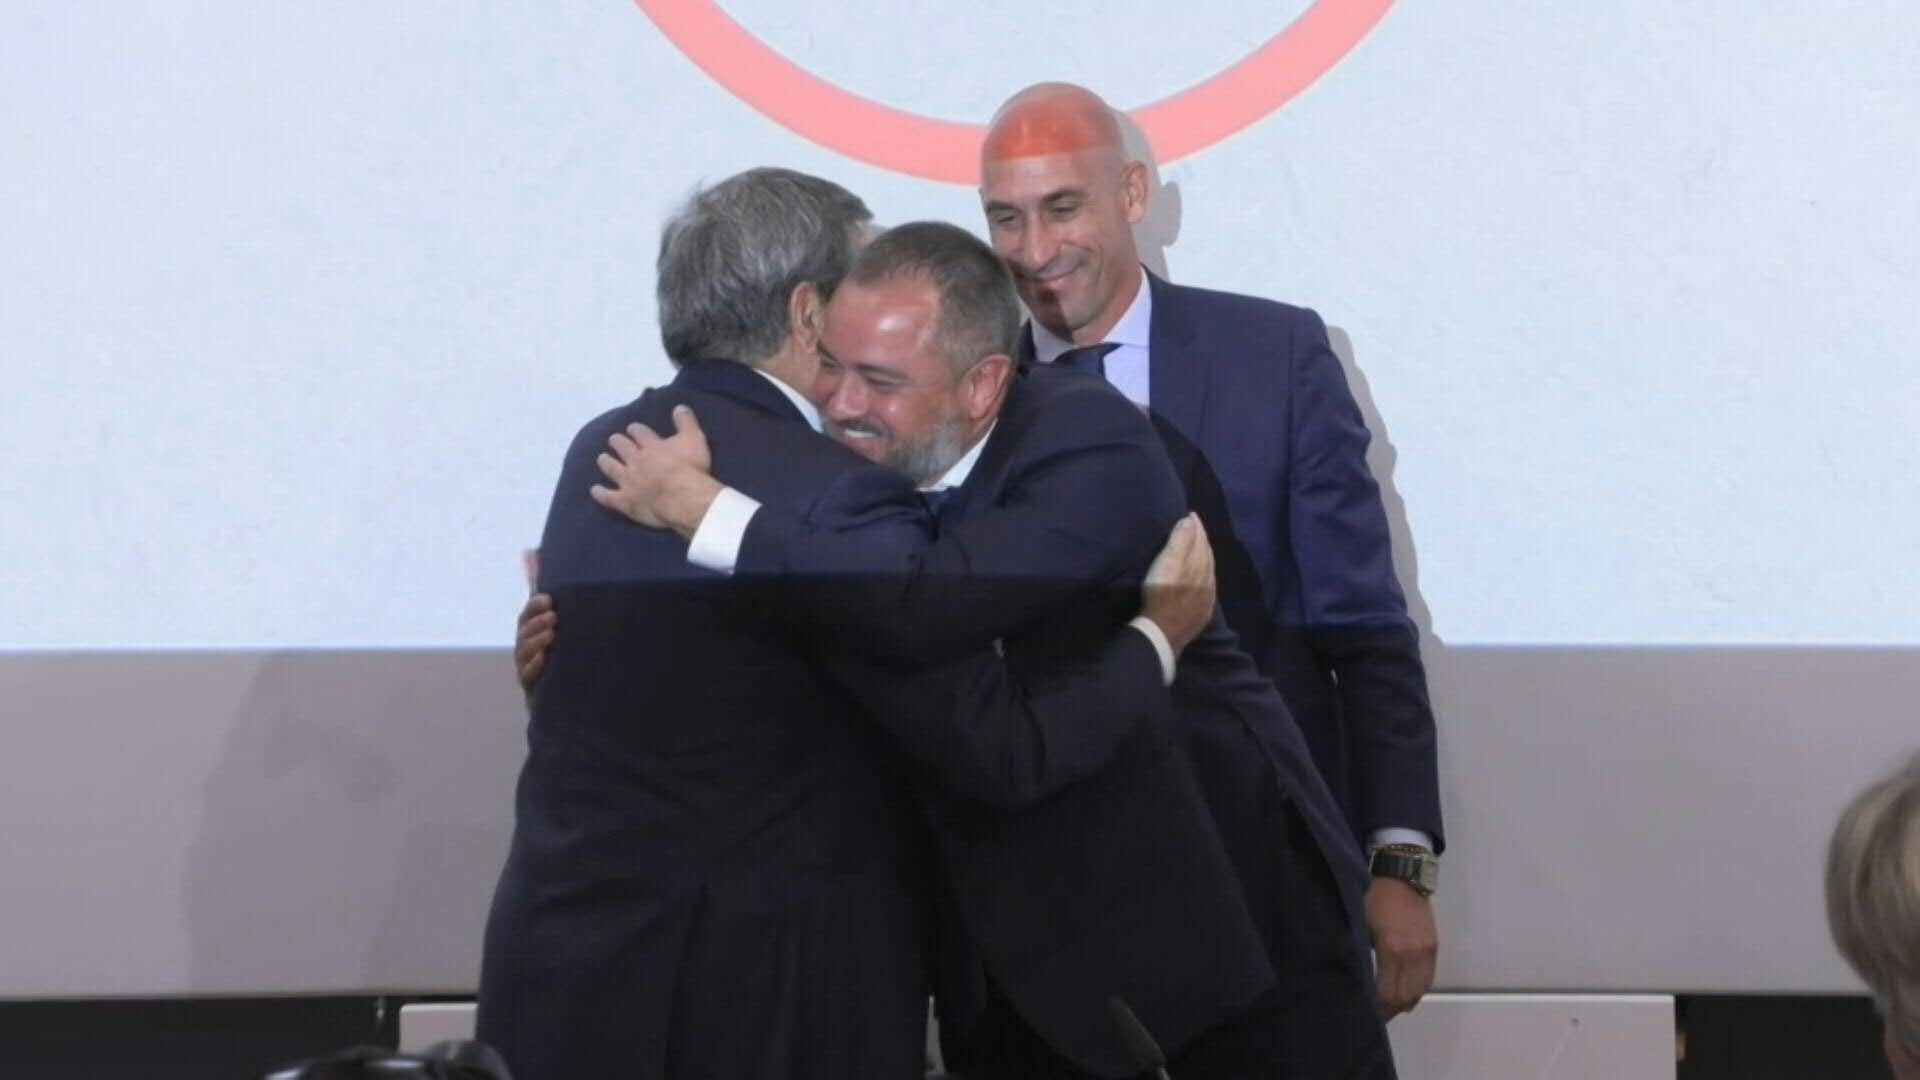 AMPLIACIÓN: Portugal y España anunciaron el miércoles que Ucrania se unirá a su candidatura conjunta a la organización del Mundial 2030 de fútbol, durante una rueda de prensa en la sede de la UEFA.